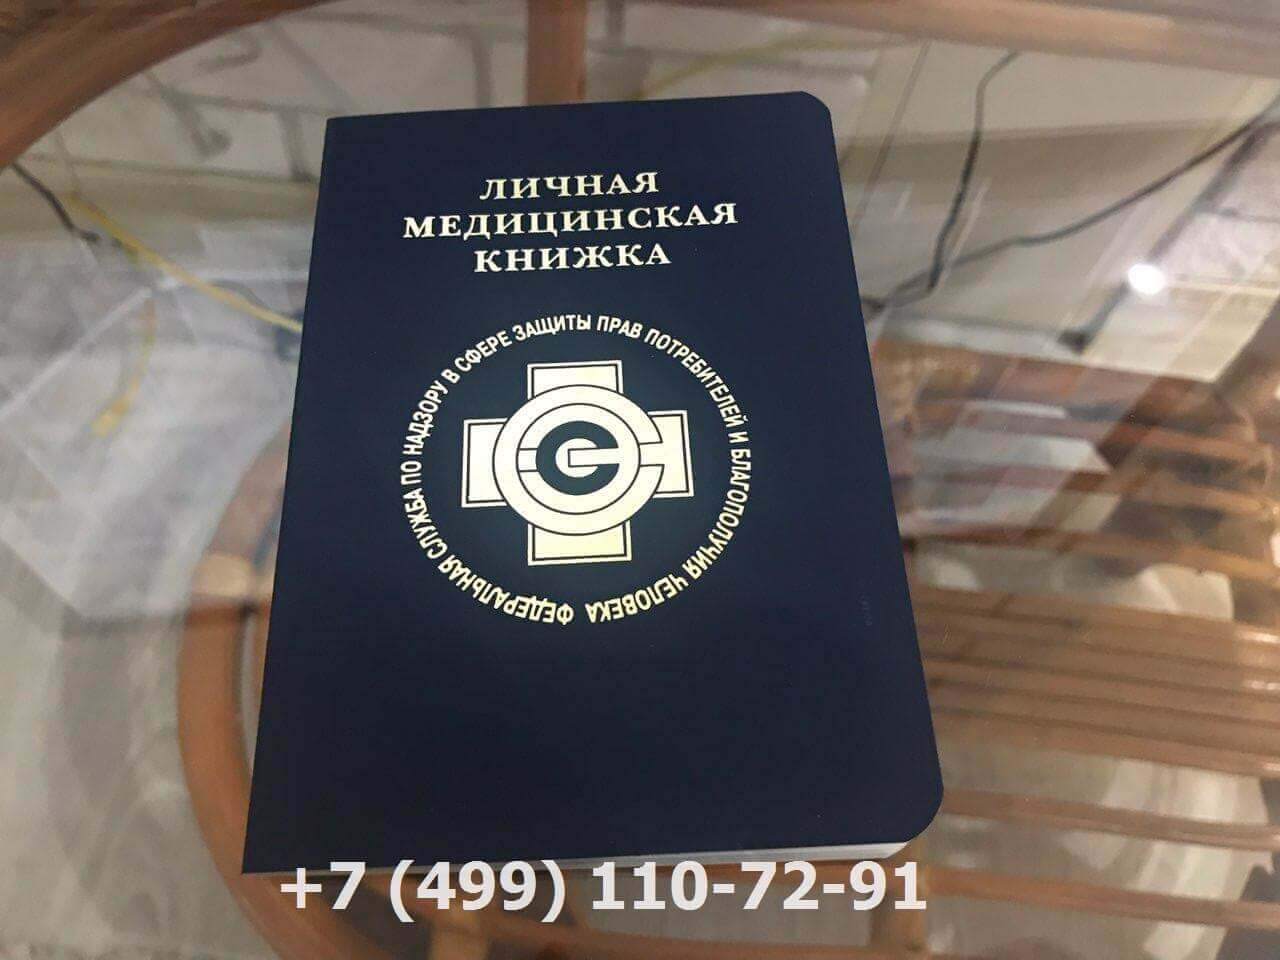 Медицинская книжка в москве официально купить